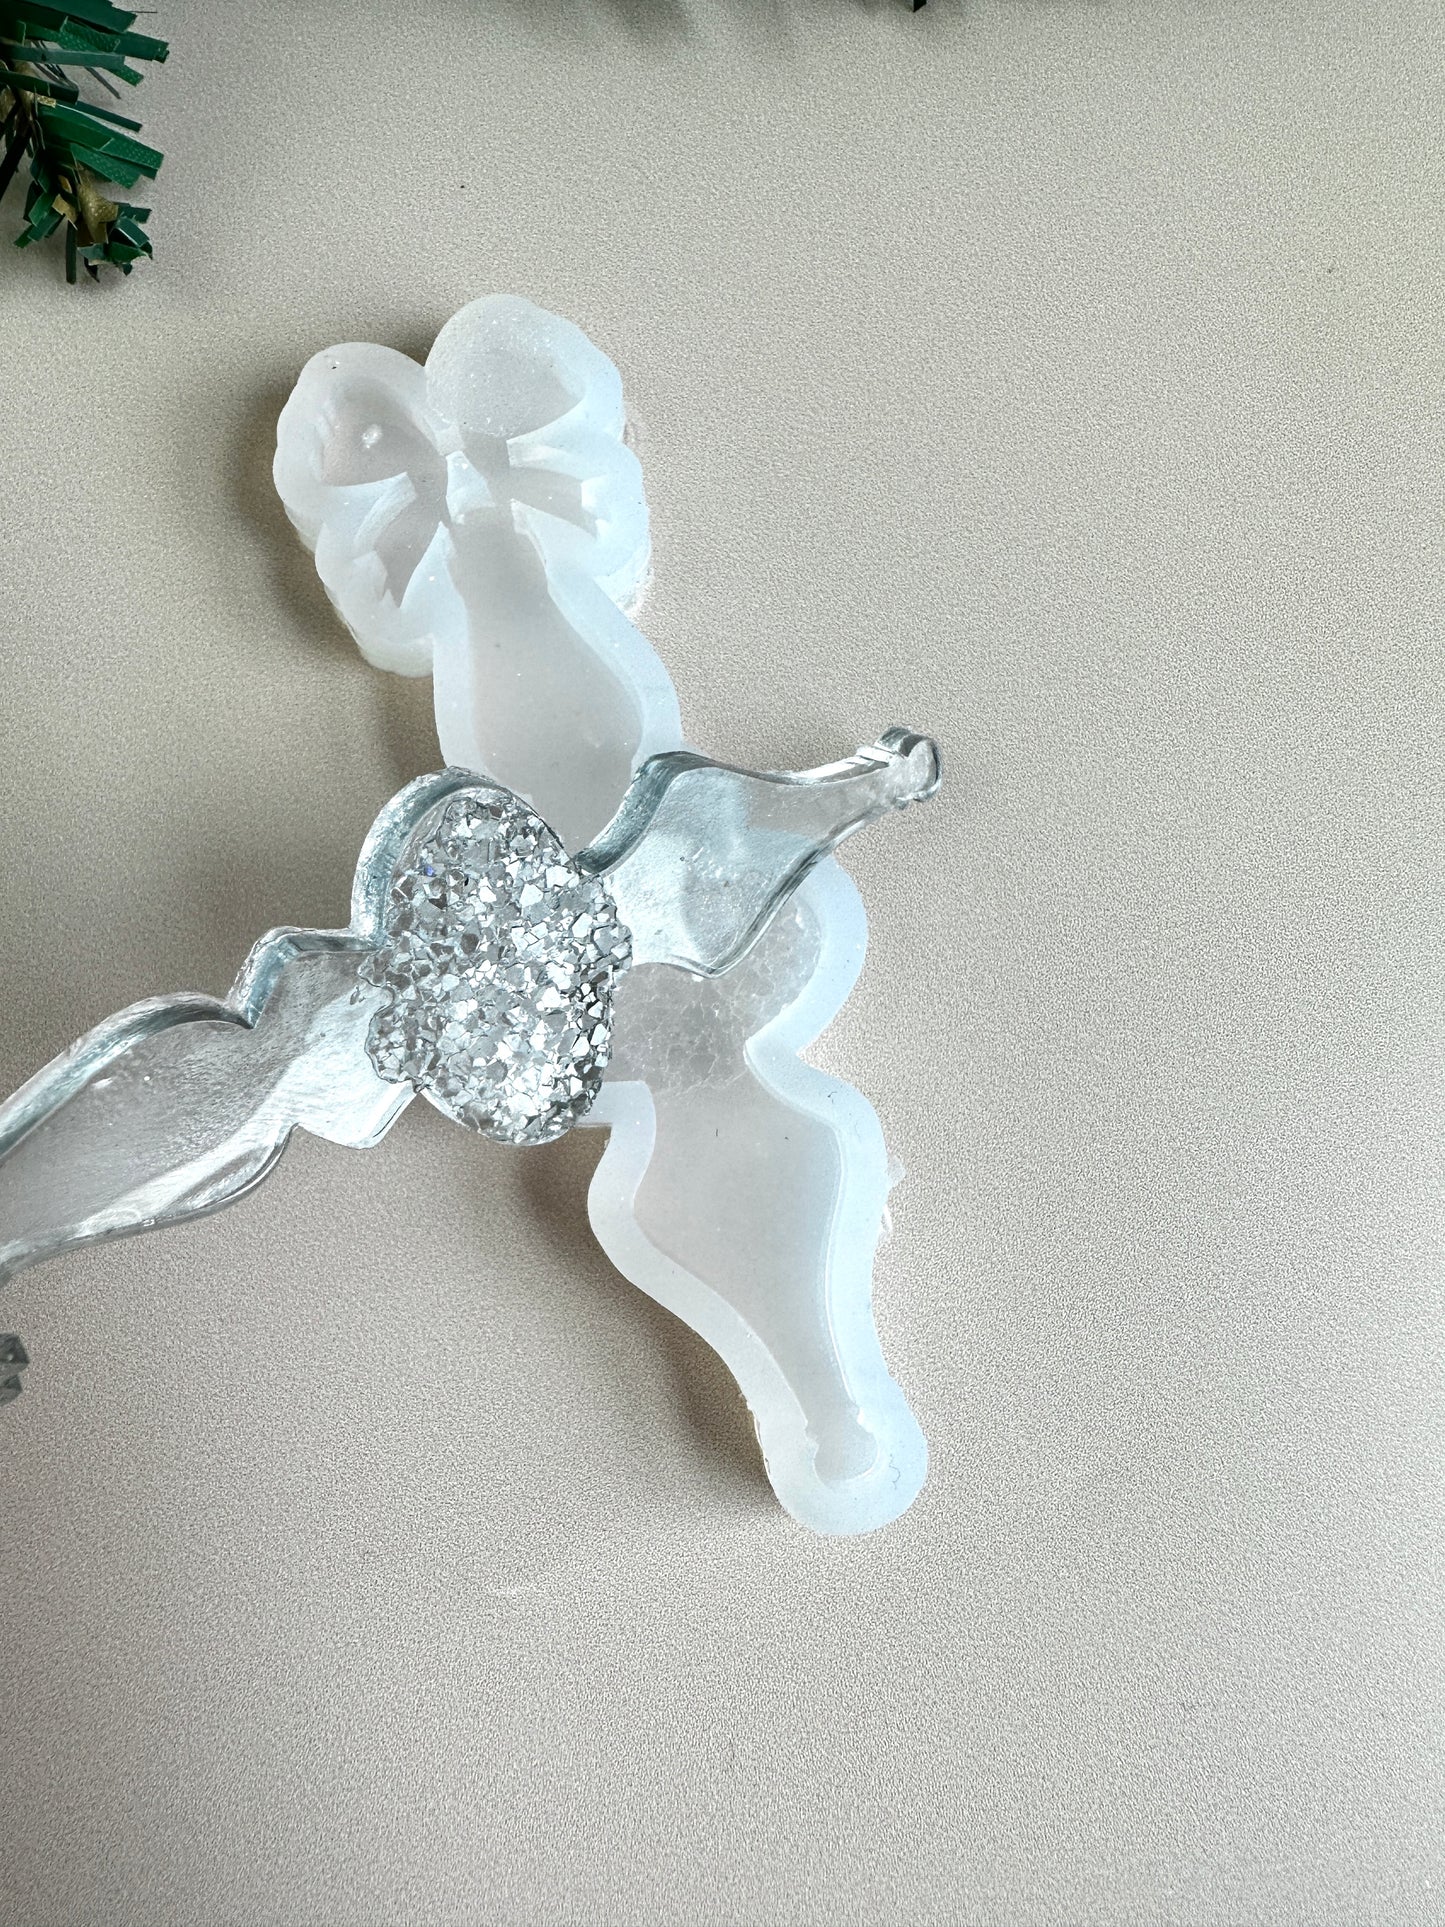 Силиконовая форма для украшения рождественской елки, сверкающие кристаллы в дизайне свечей, идеально подходит для Рождества, уникальный подарок для художника